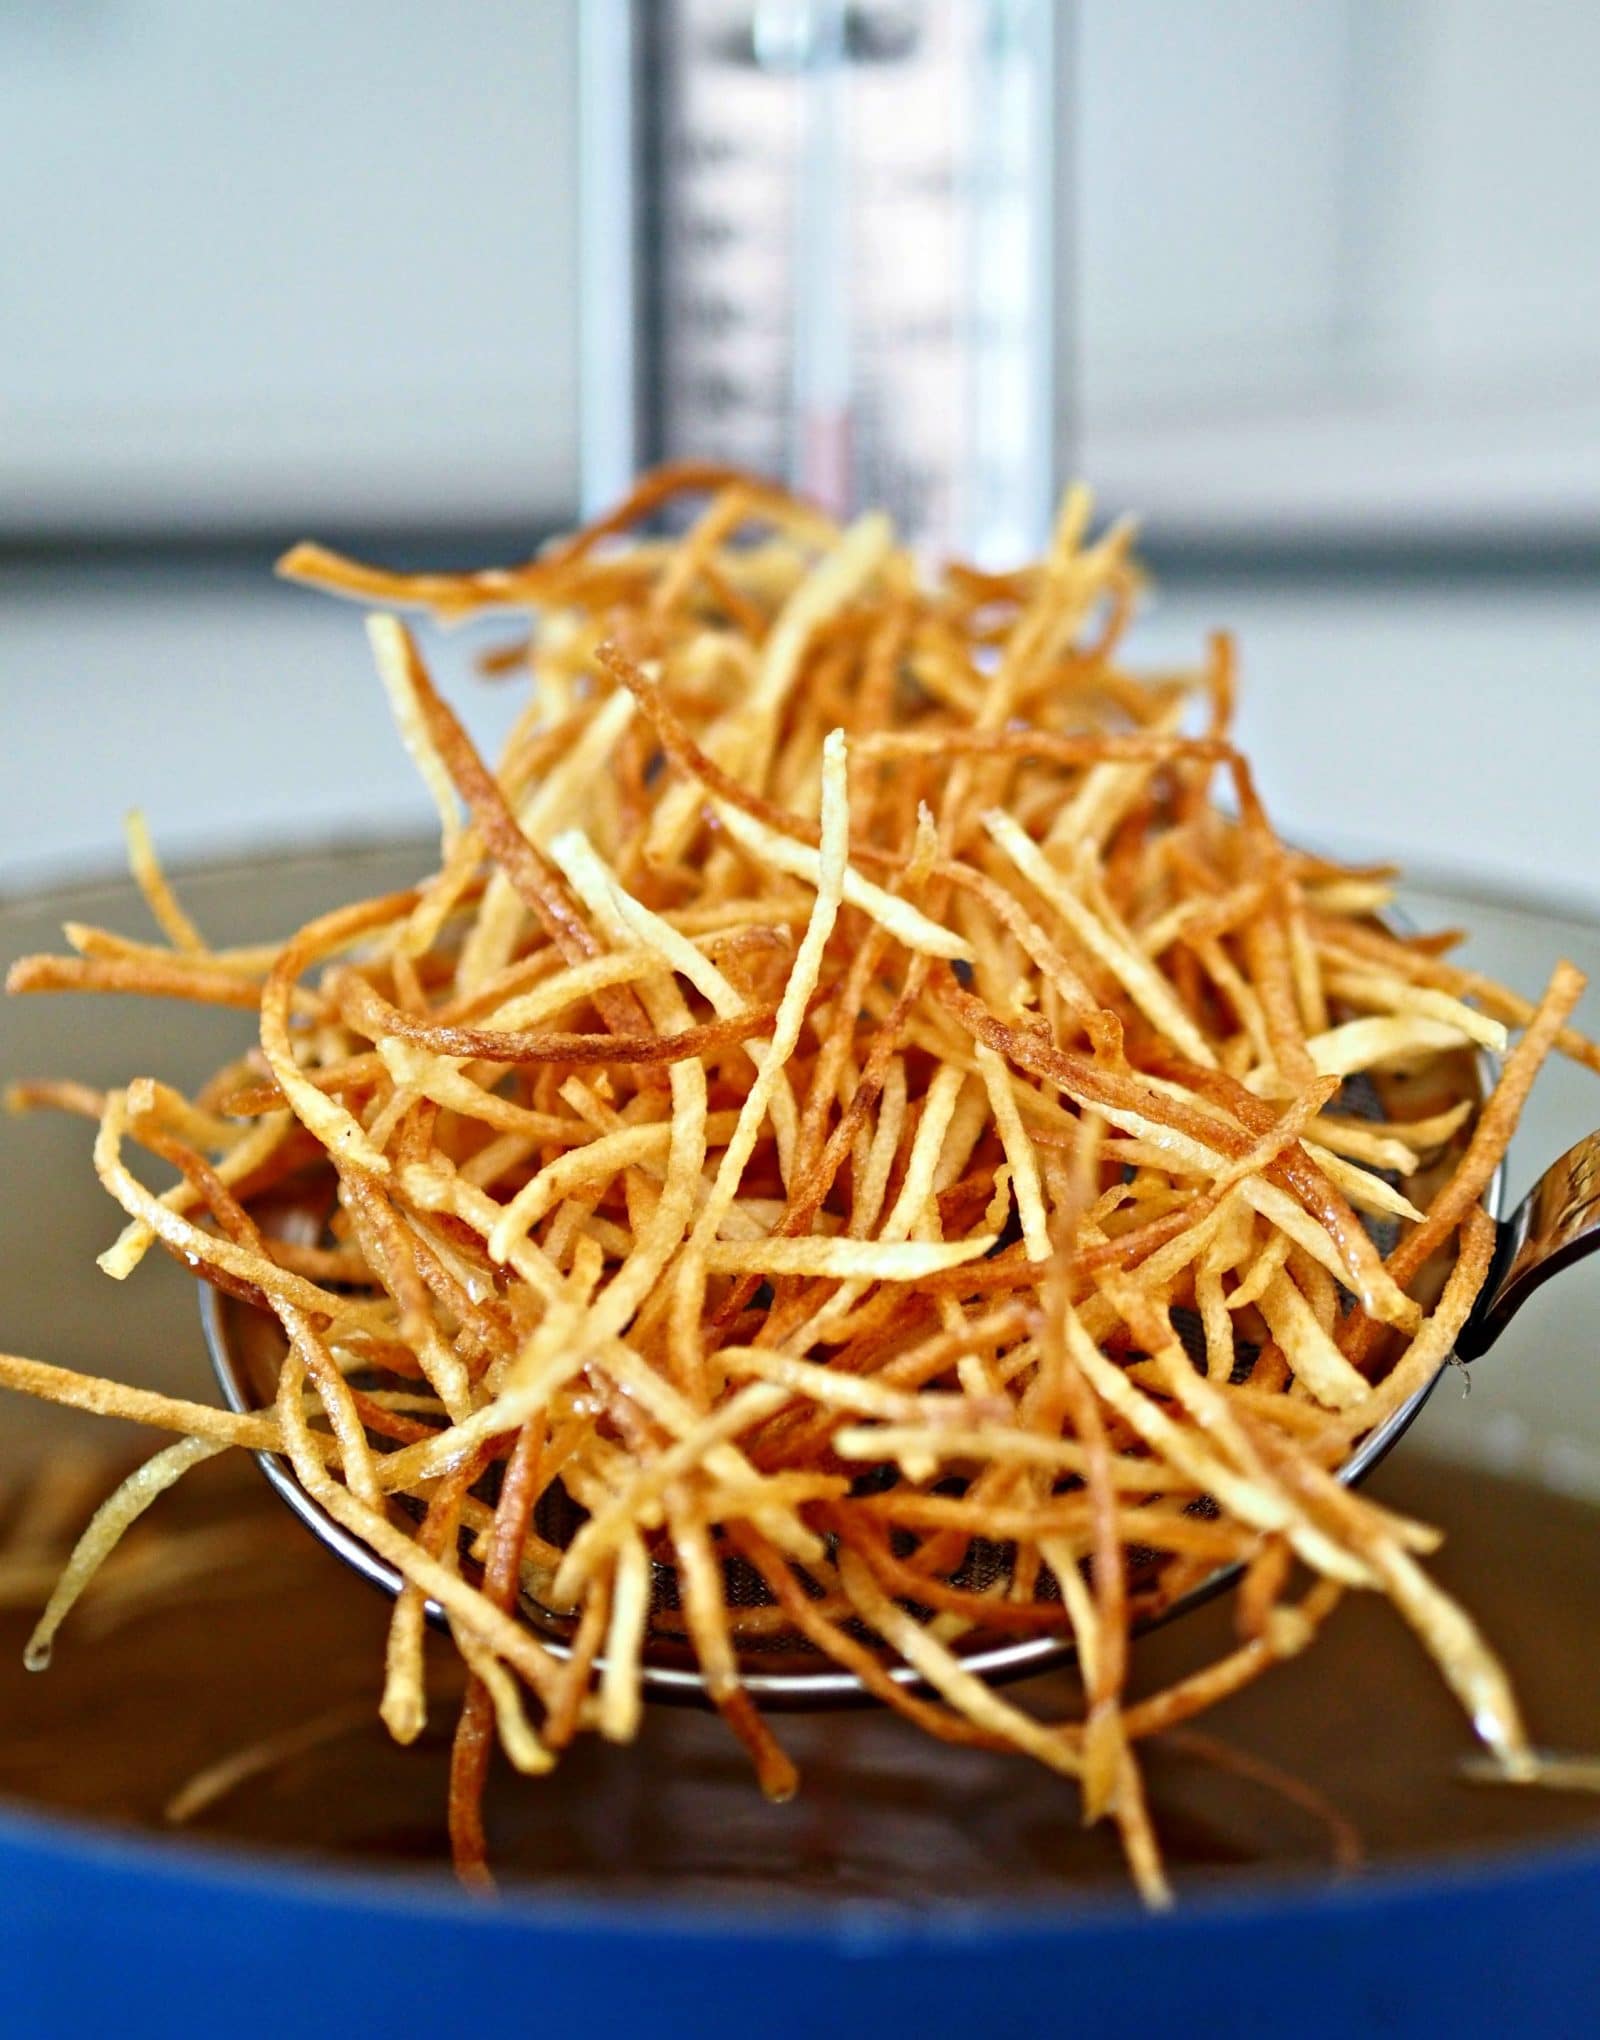 Crispy Crunchy Shoestring Potatoes. Ziemniaki w kształcie zapałek smażone na złoty kolor, a następnie doskonale przyprawione. Proste, pyszne i uzależniające. Simply Sated